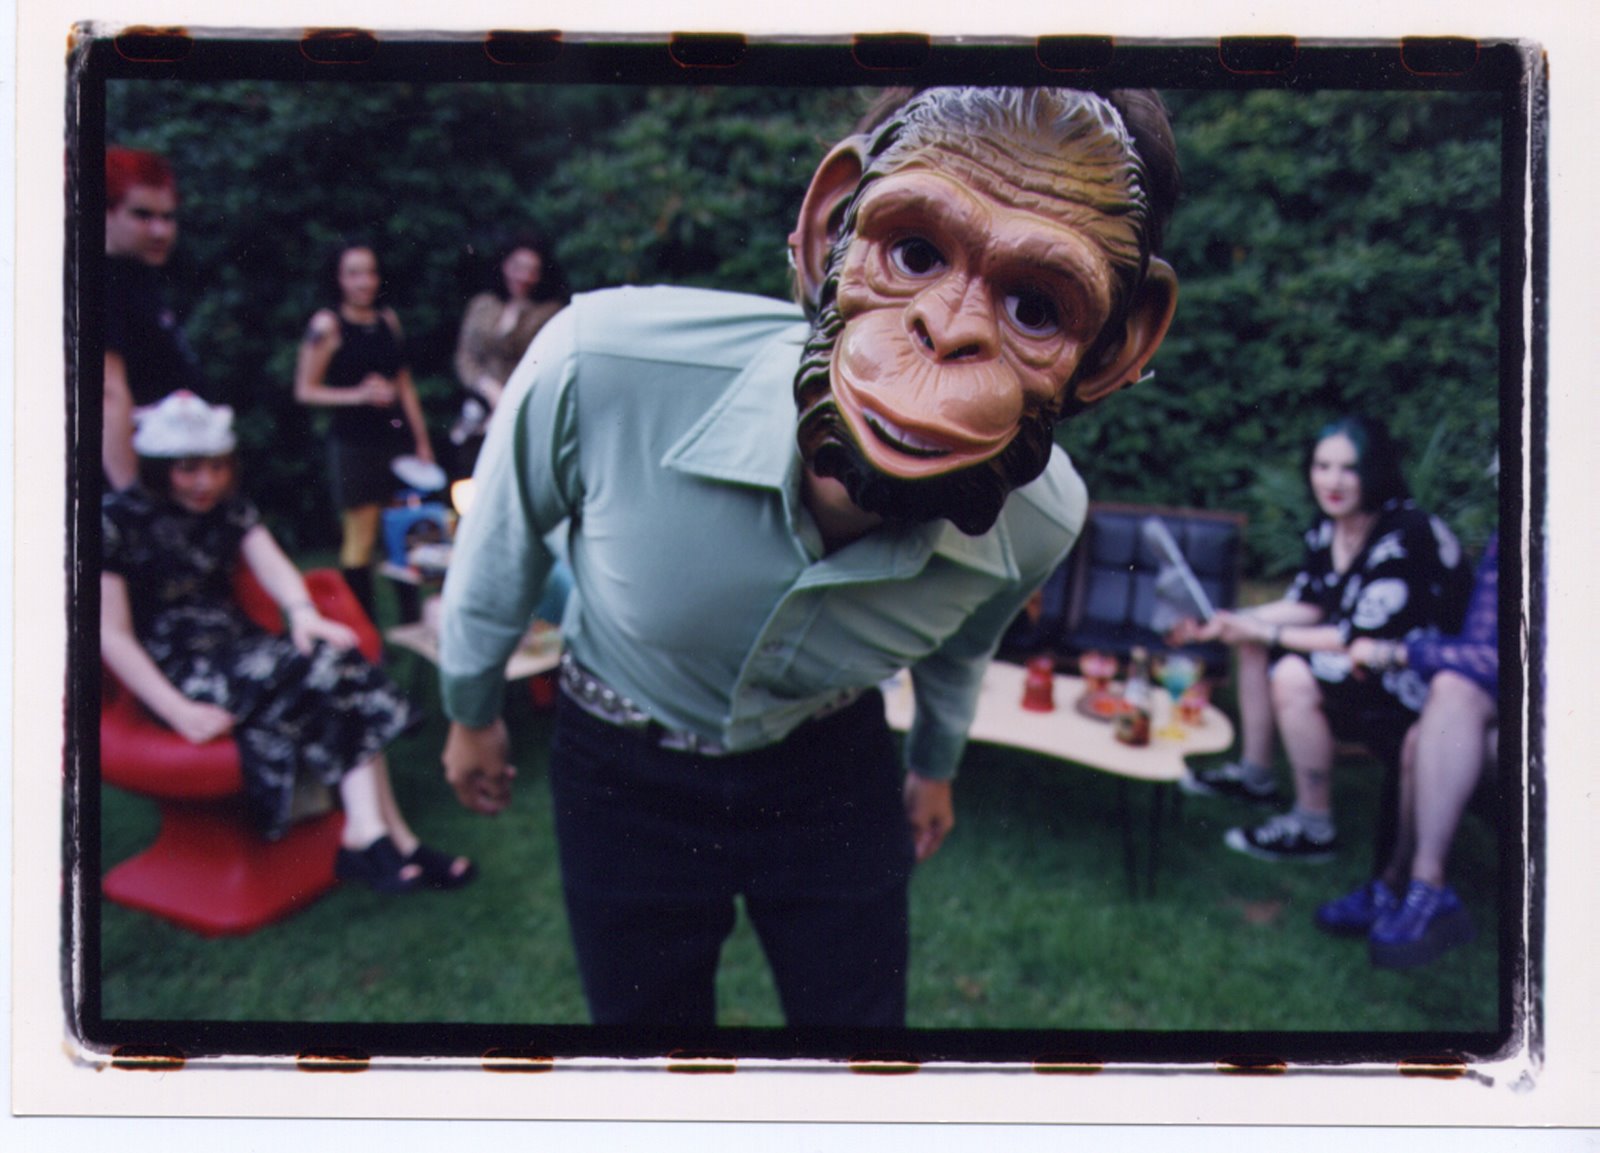 [Ken+the+monkey.jpg]